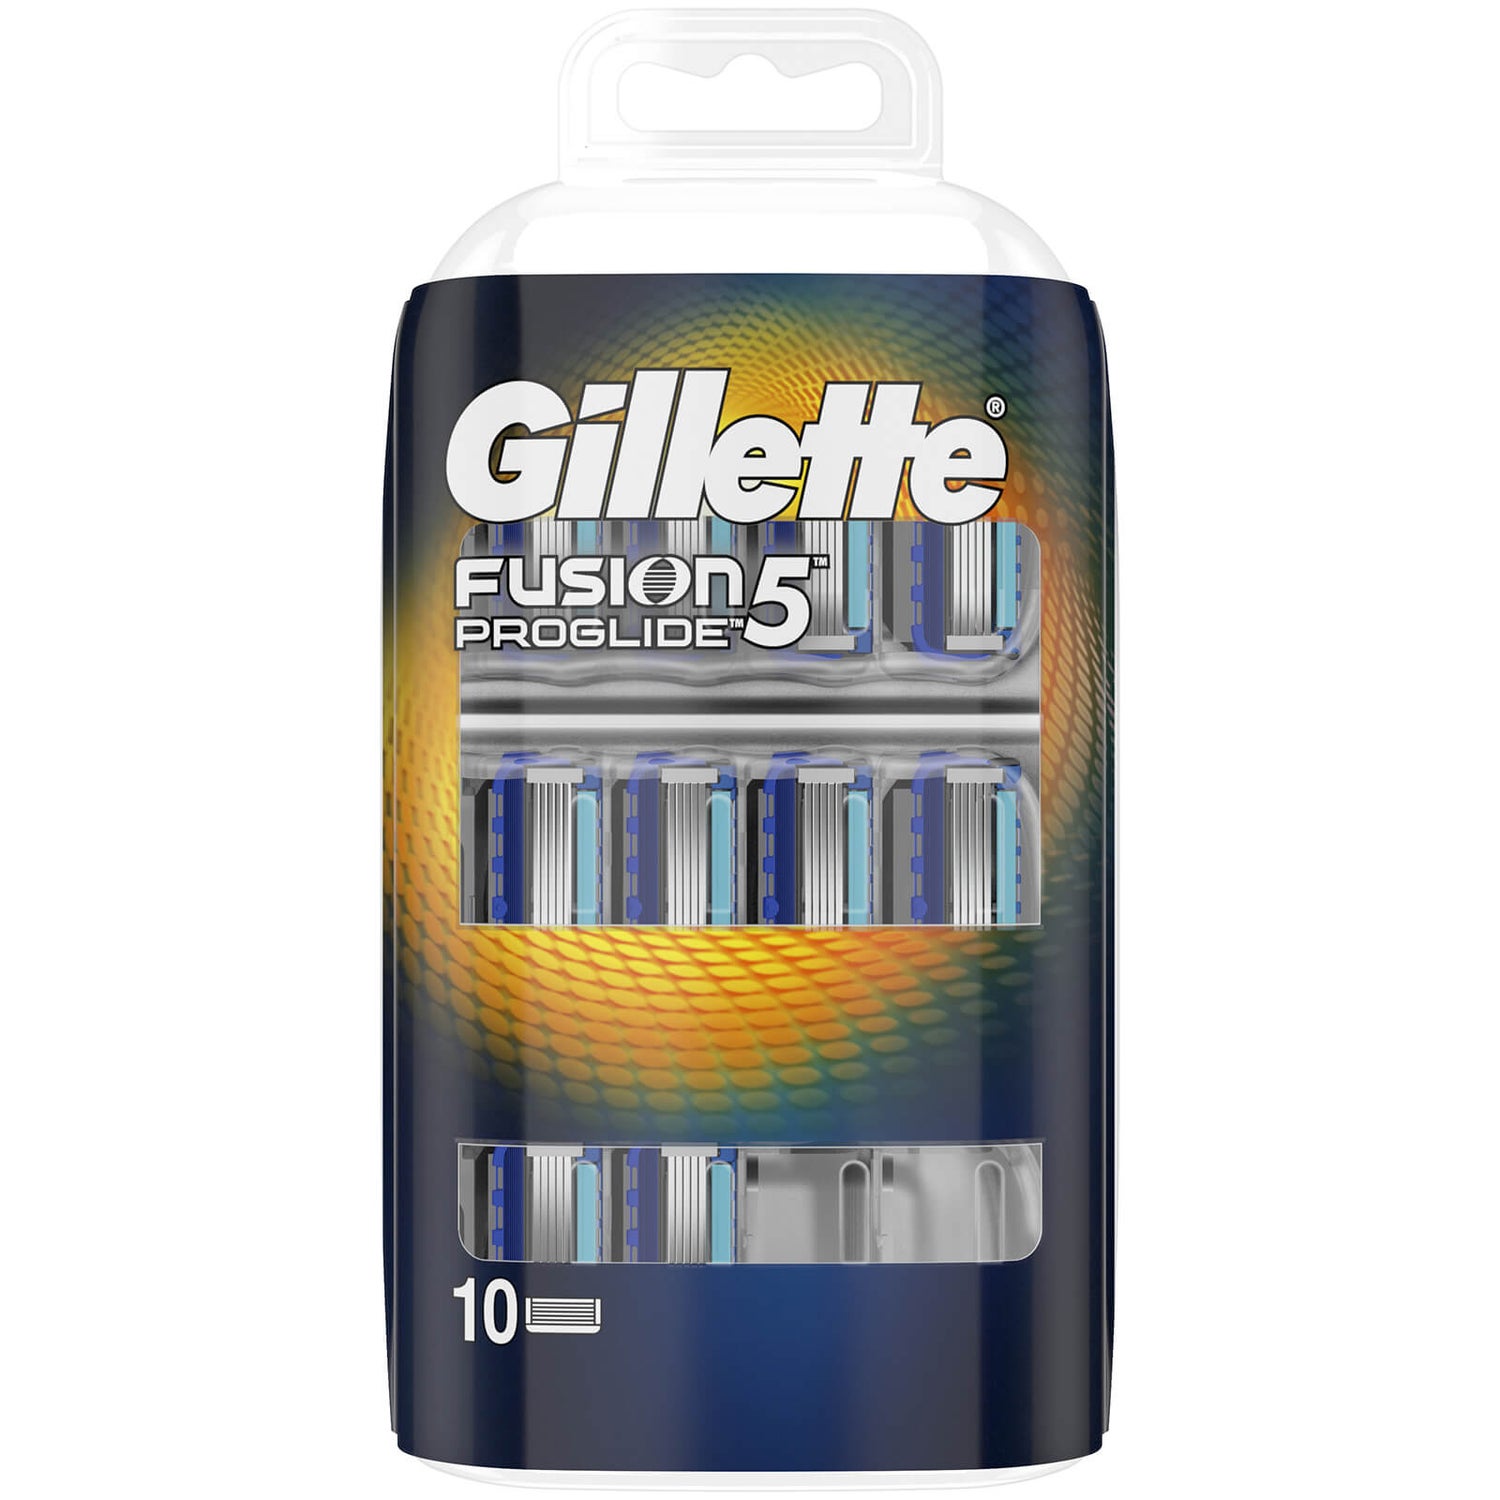 Gillette Fusion5 ProGlide Razor Blades (10 Pack)